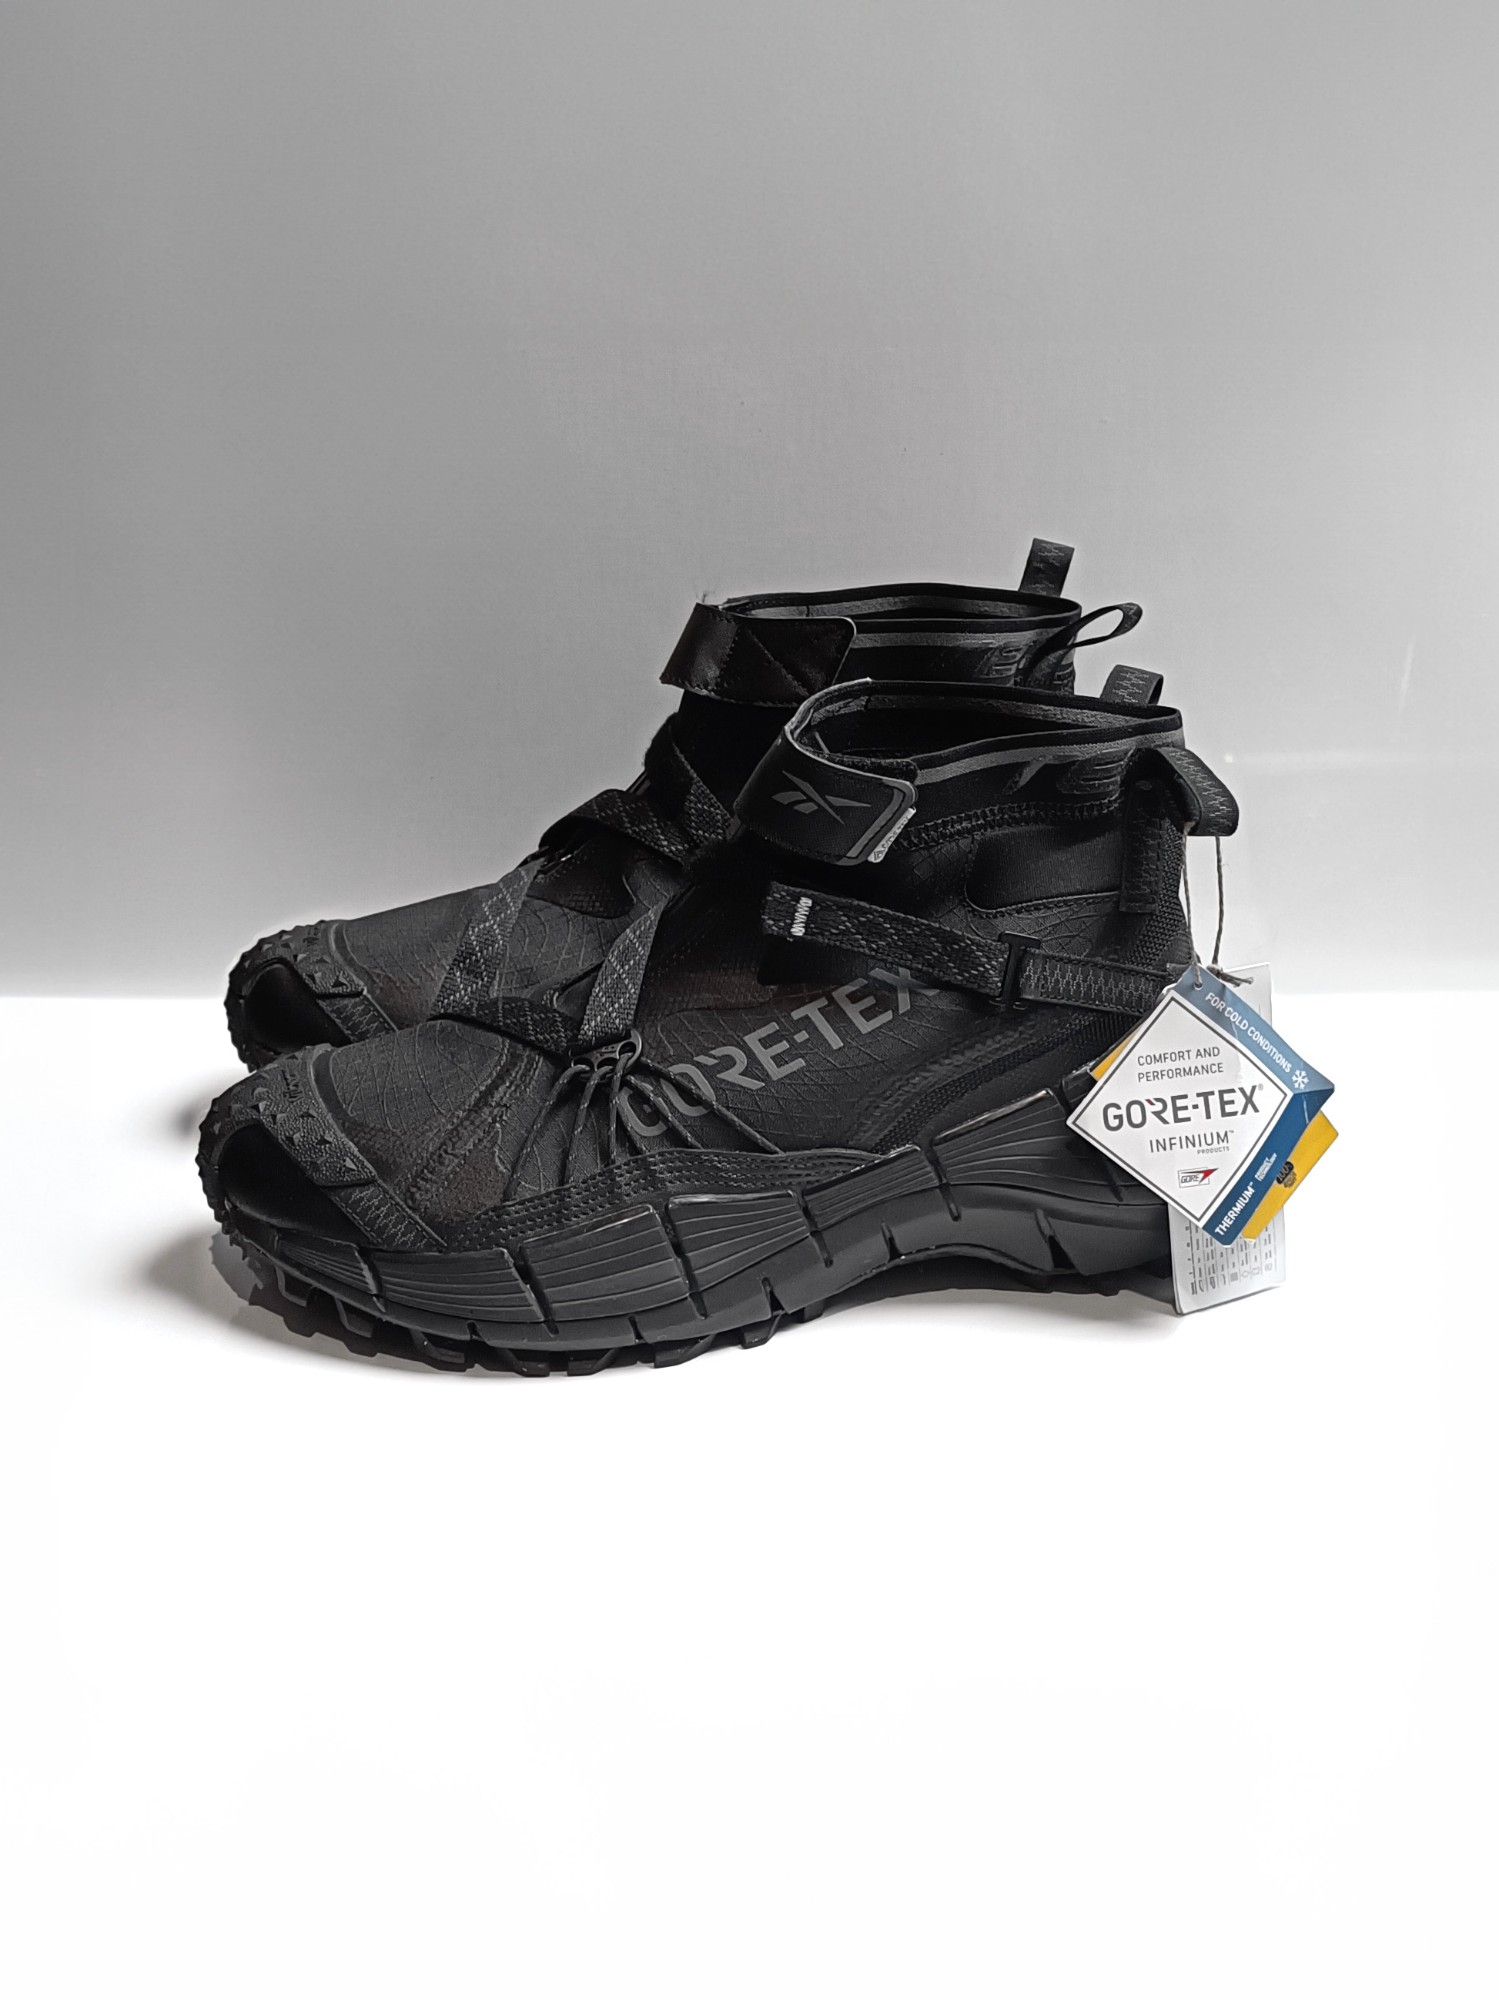 Reebok Zig Kinetica II Edge GORE-TEX 'Black' Techwear Sneakers - 1